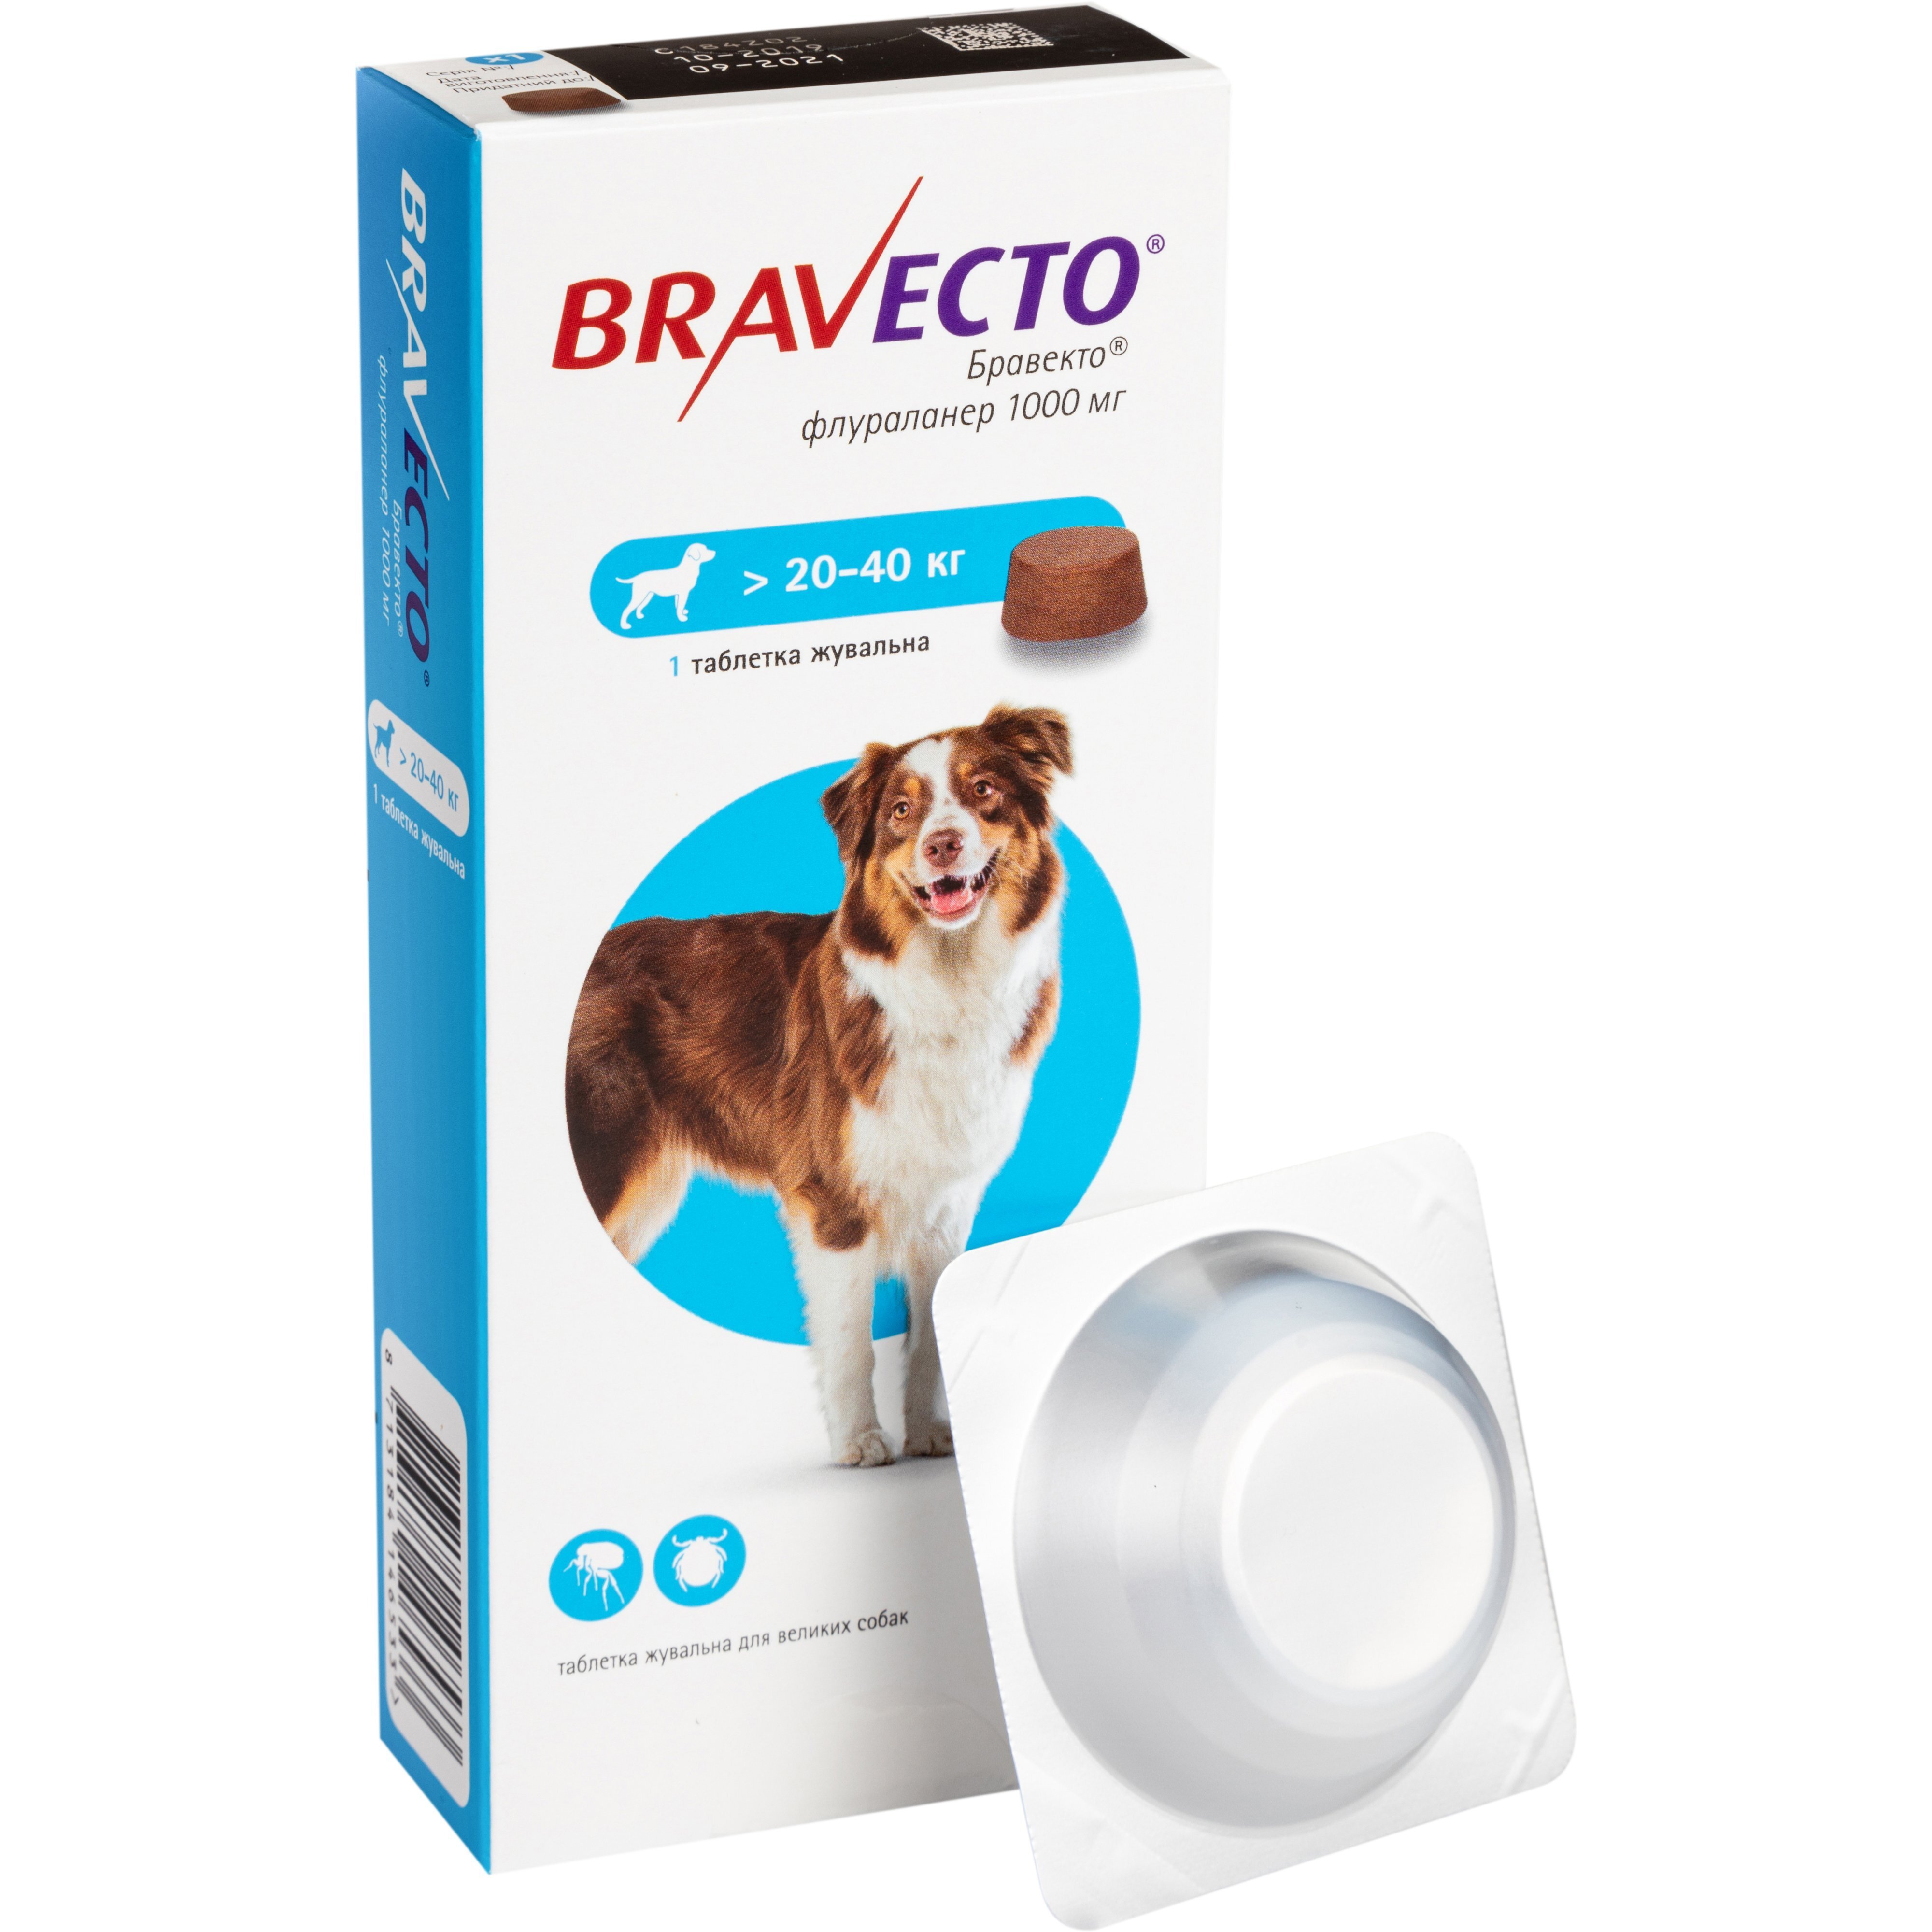 Жевательная таблетка Bravecto от блох и клещей для собак весом от 20 до 40 кг фото 1